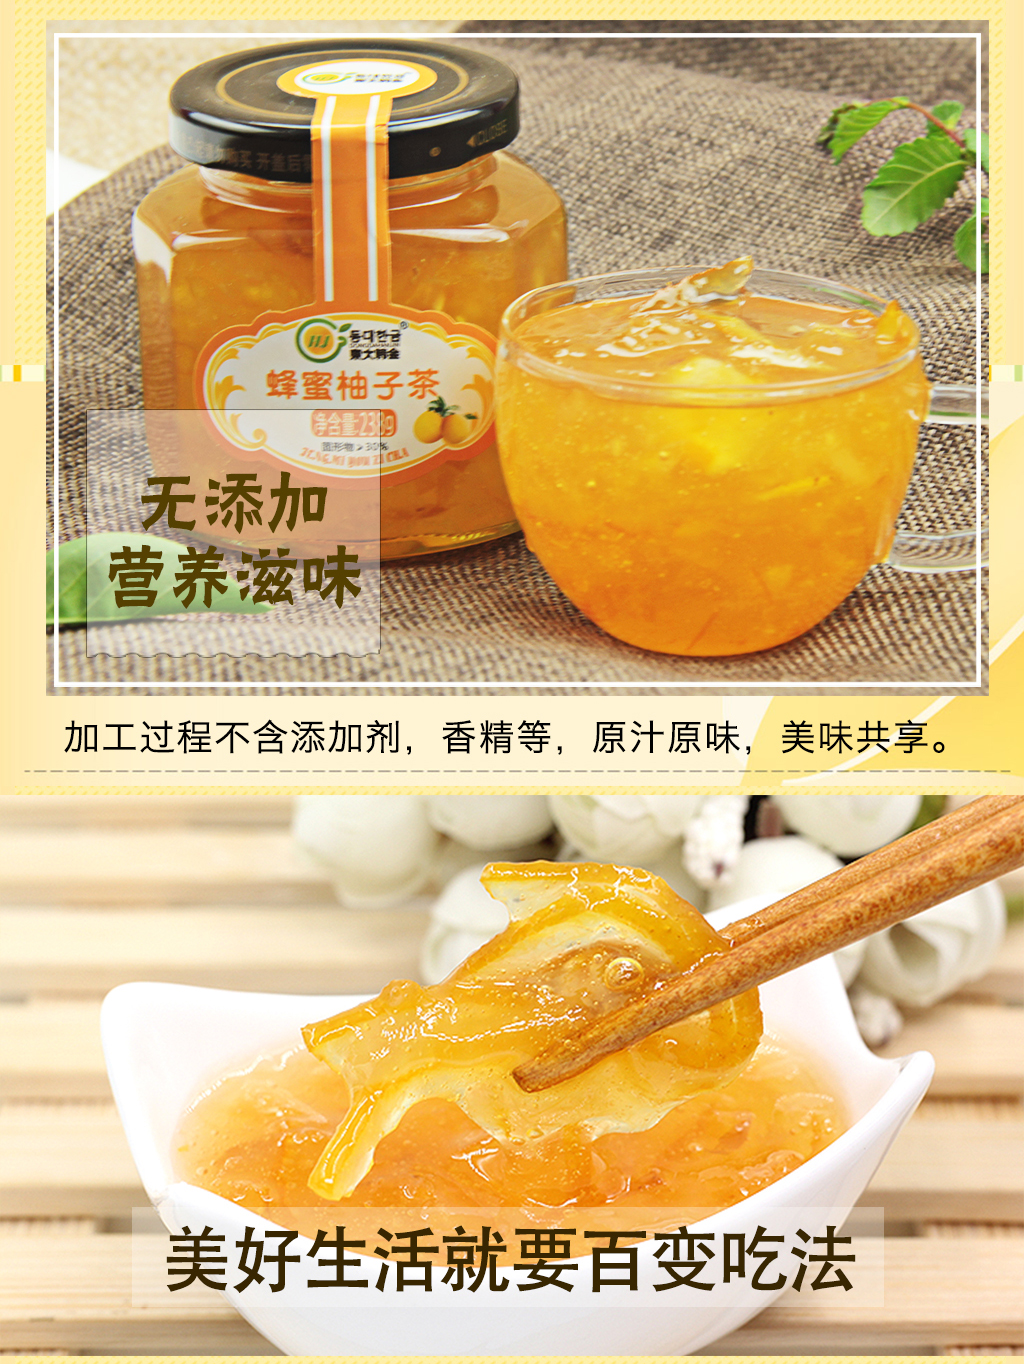 韓國原裝進口全南蜂蜜柚子茶1kg 泡水喝的冬季沖泡飲料水果檸檬茶果醬